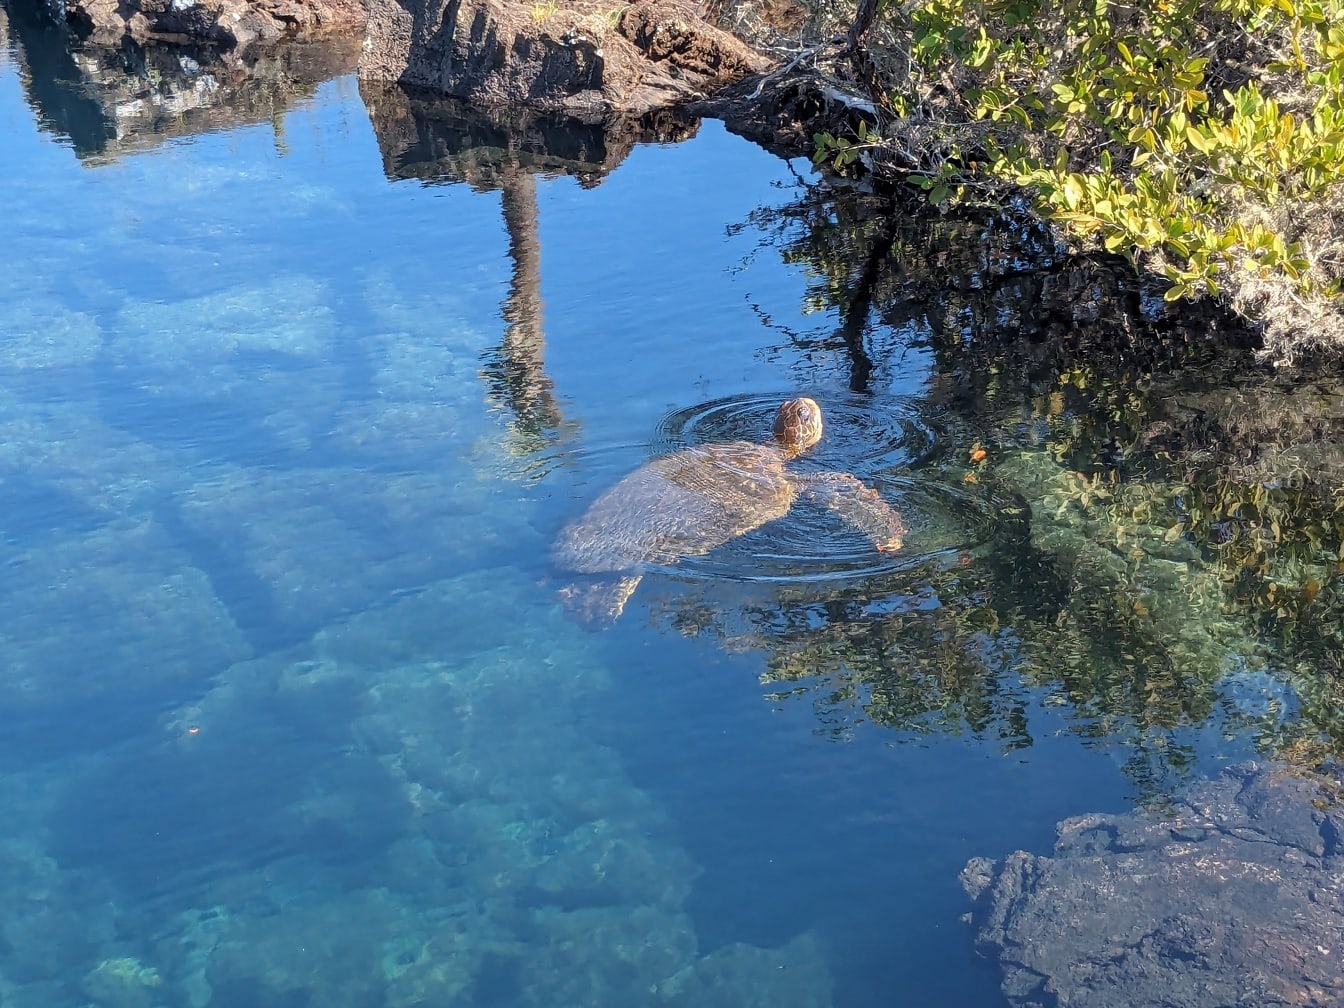 Galapážská zelená mořská želva (Chelonia mydas agassizii) želva plavající v mělké vodě u pobřeží